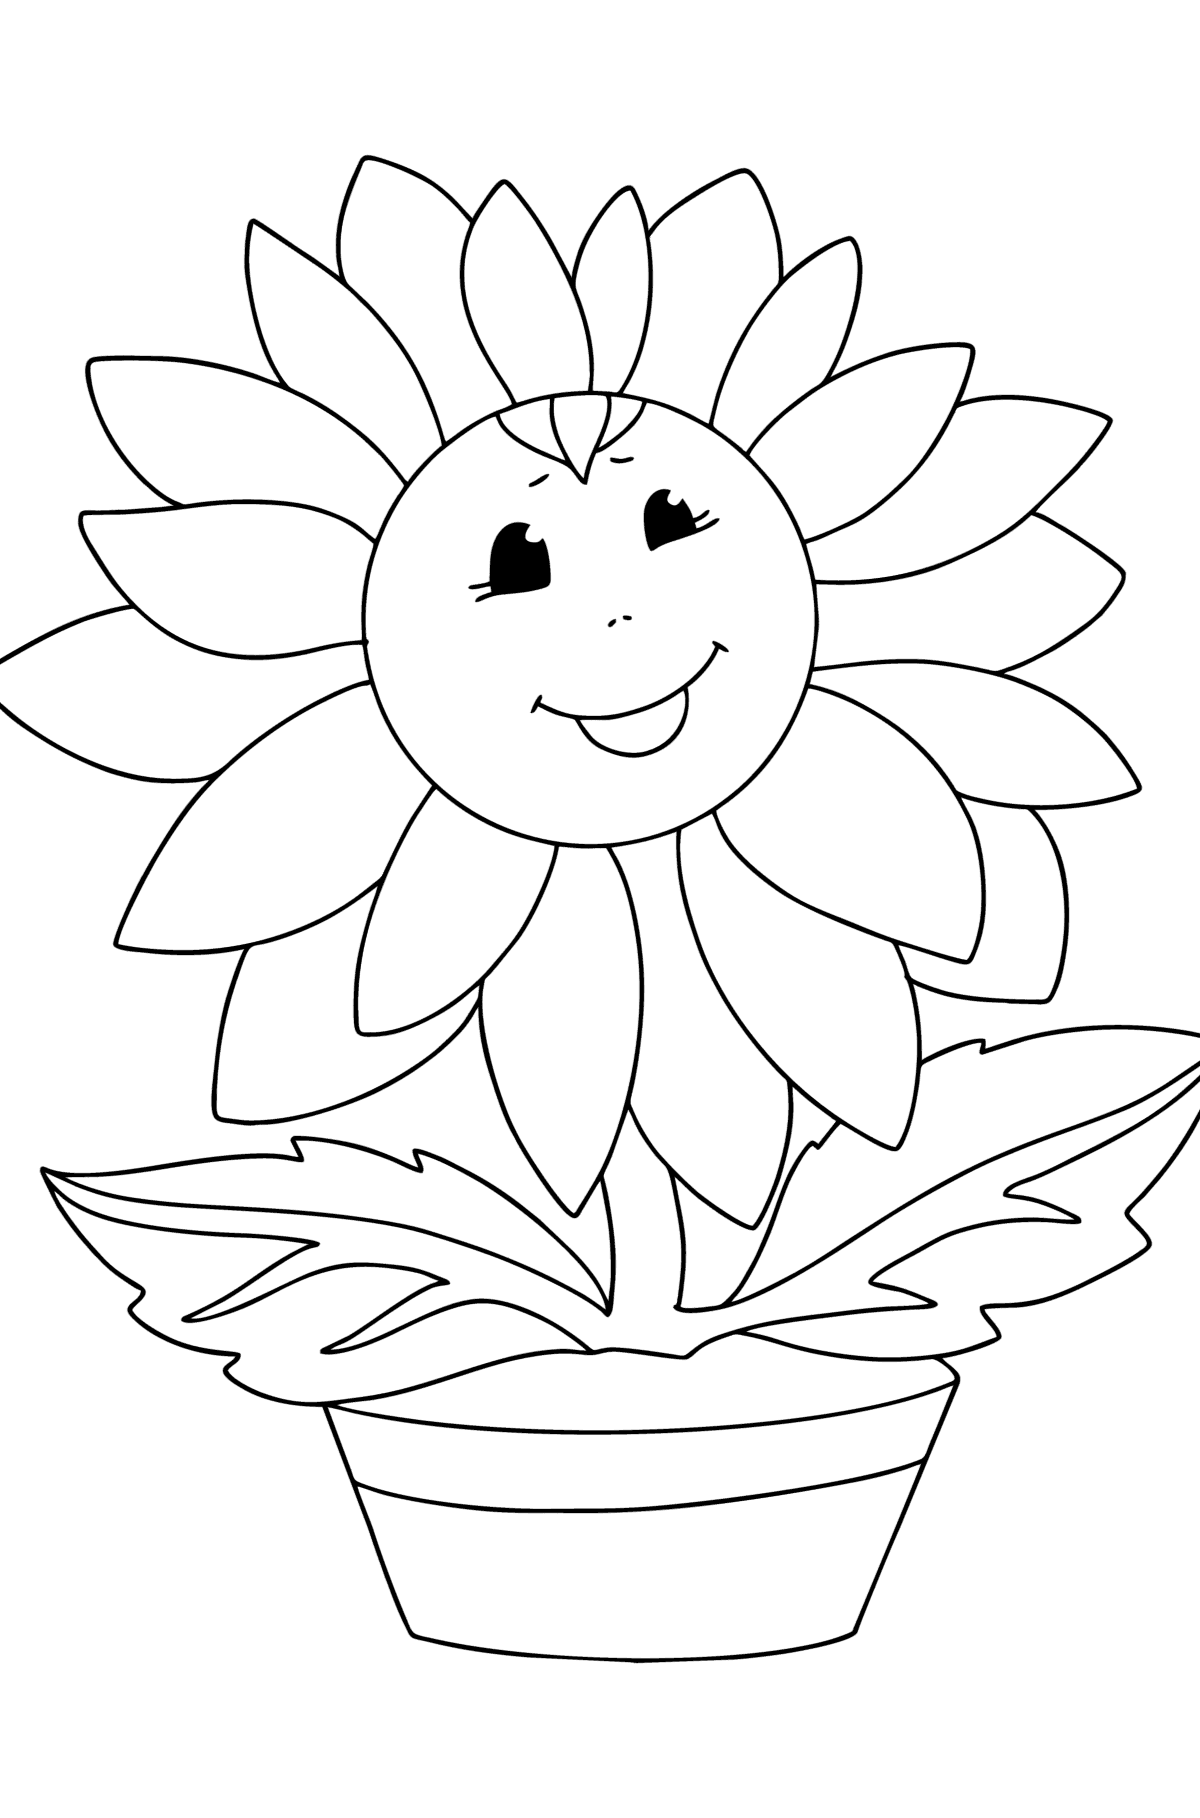 Boyama sayfası gözlü ayçiçeği - Boyamalar çocuklar için